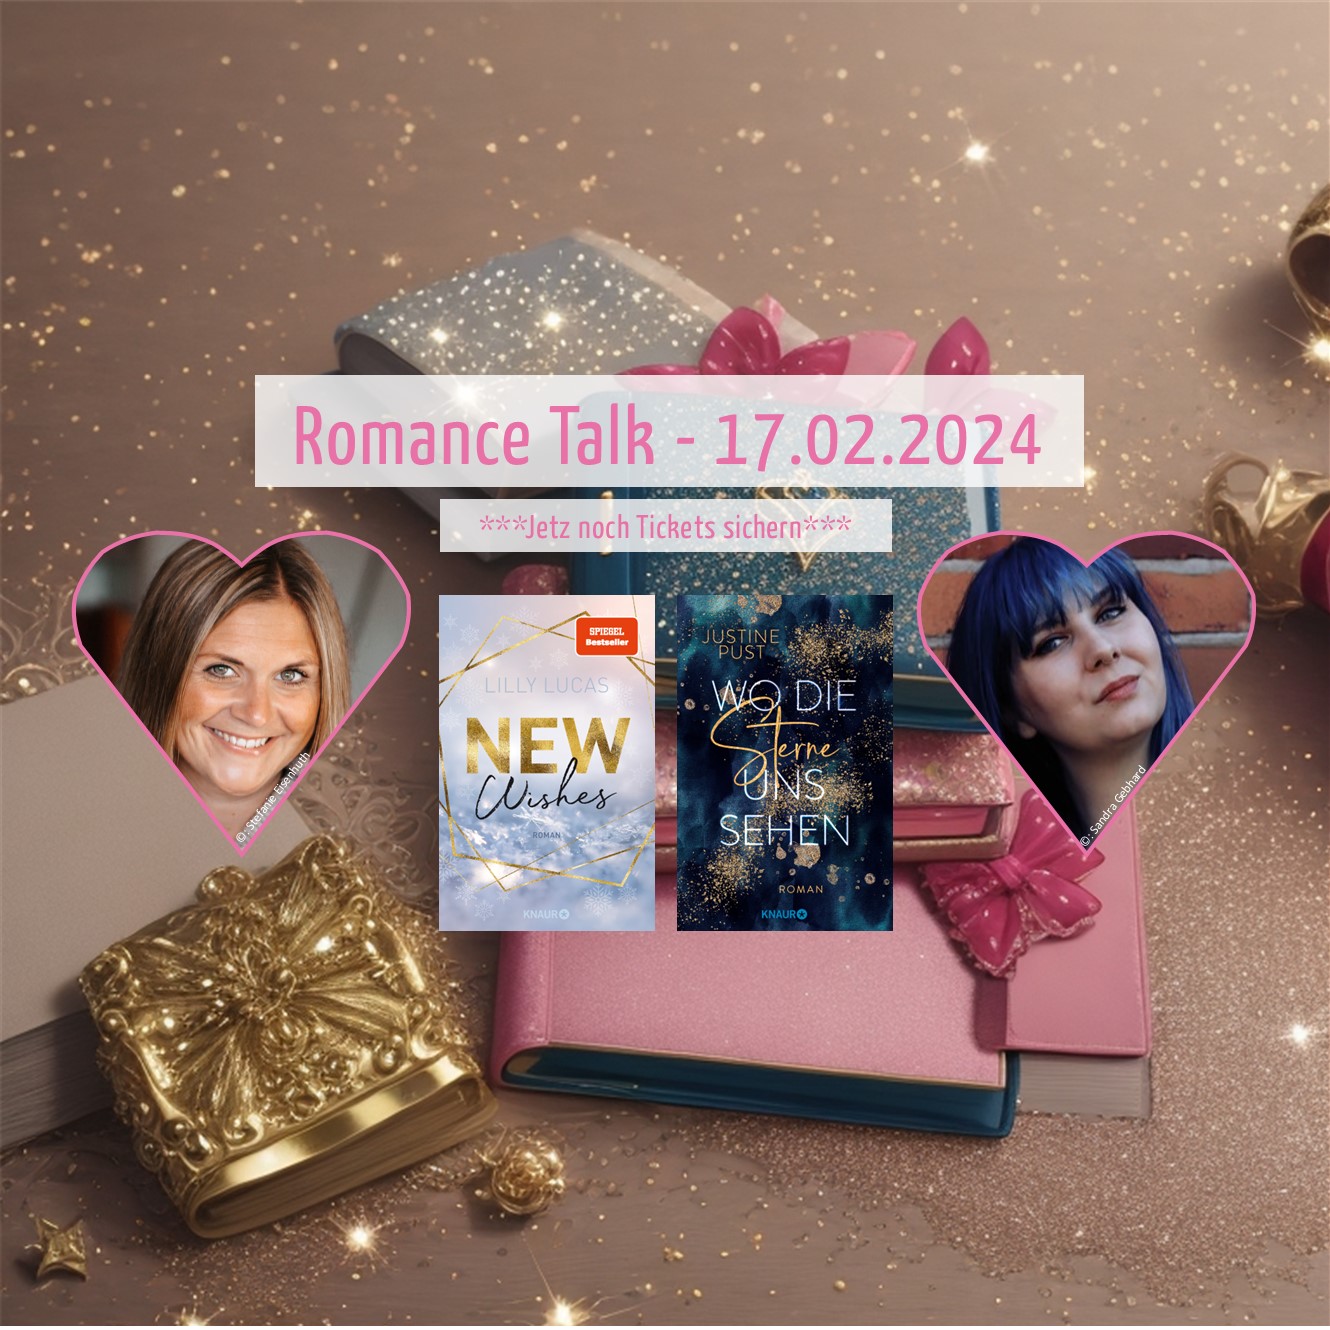 Eintrittskarte Romance Talk mit Lilly Lucas und Justine Pust am 17. Februar 2024